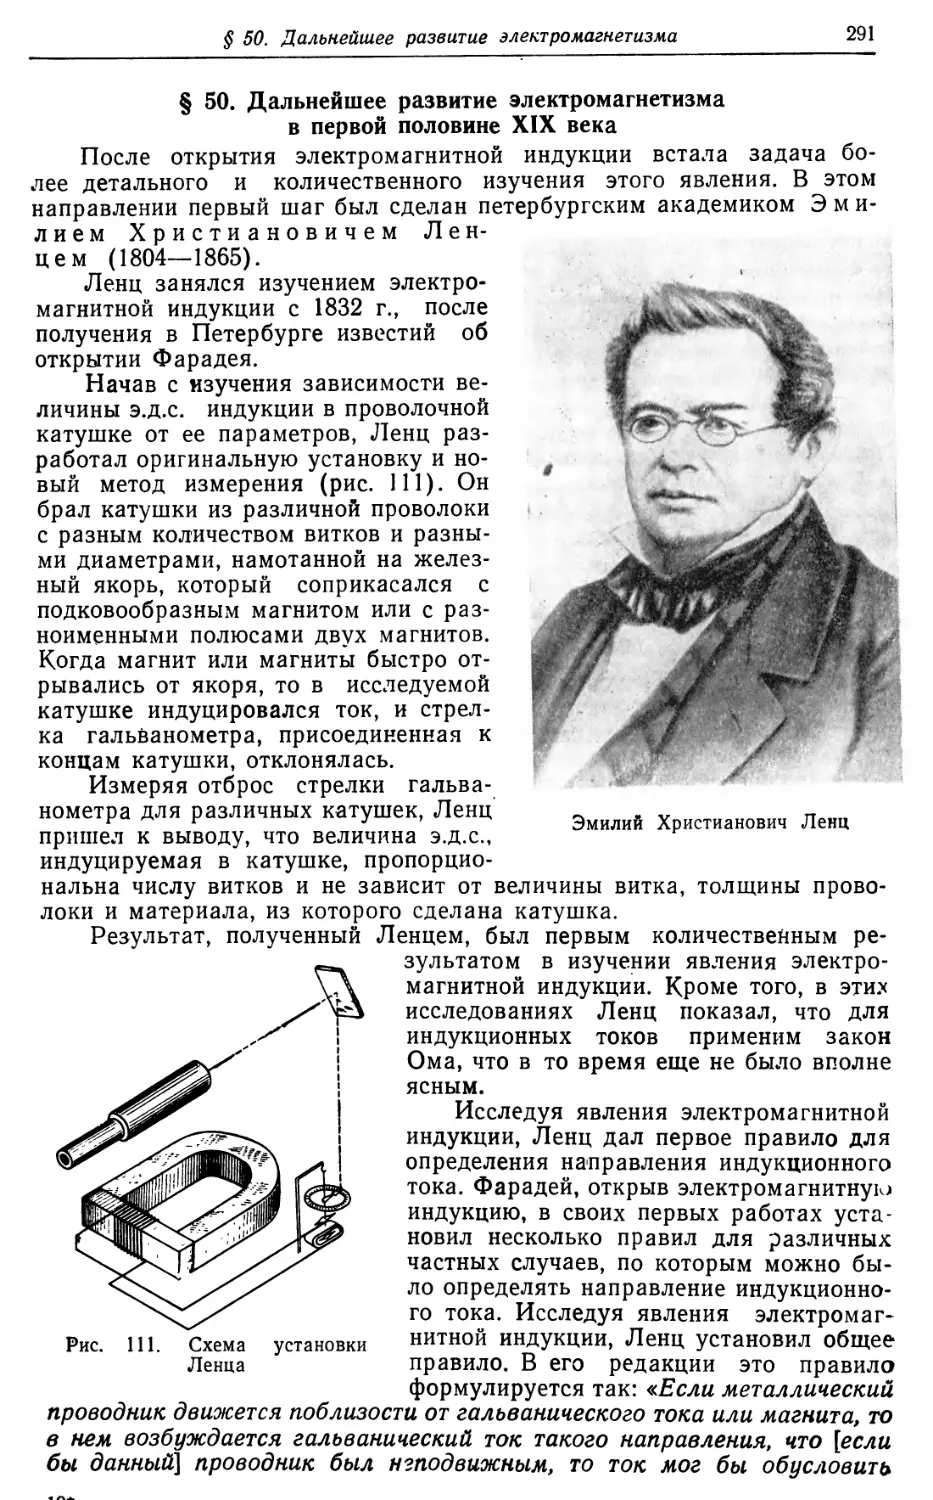 § 50. Дальнейшее развитие электромагнетизма в первой половине XIX века